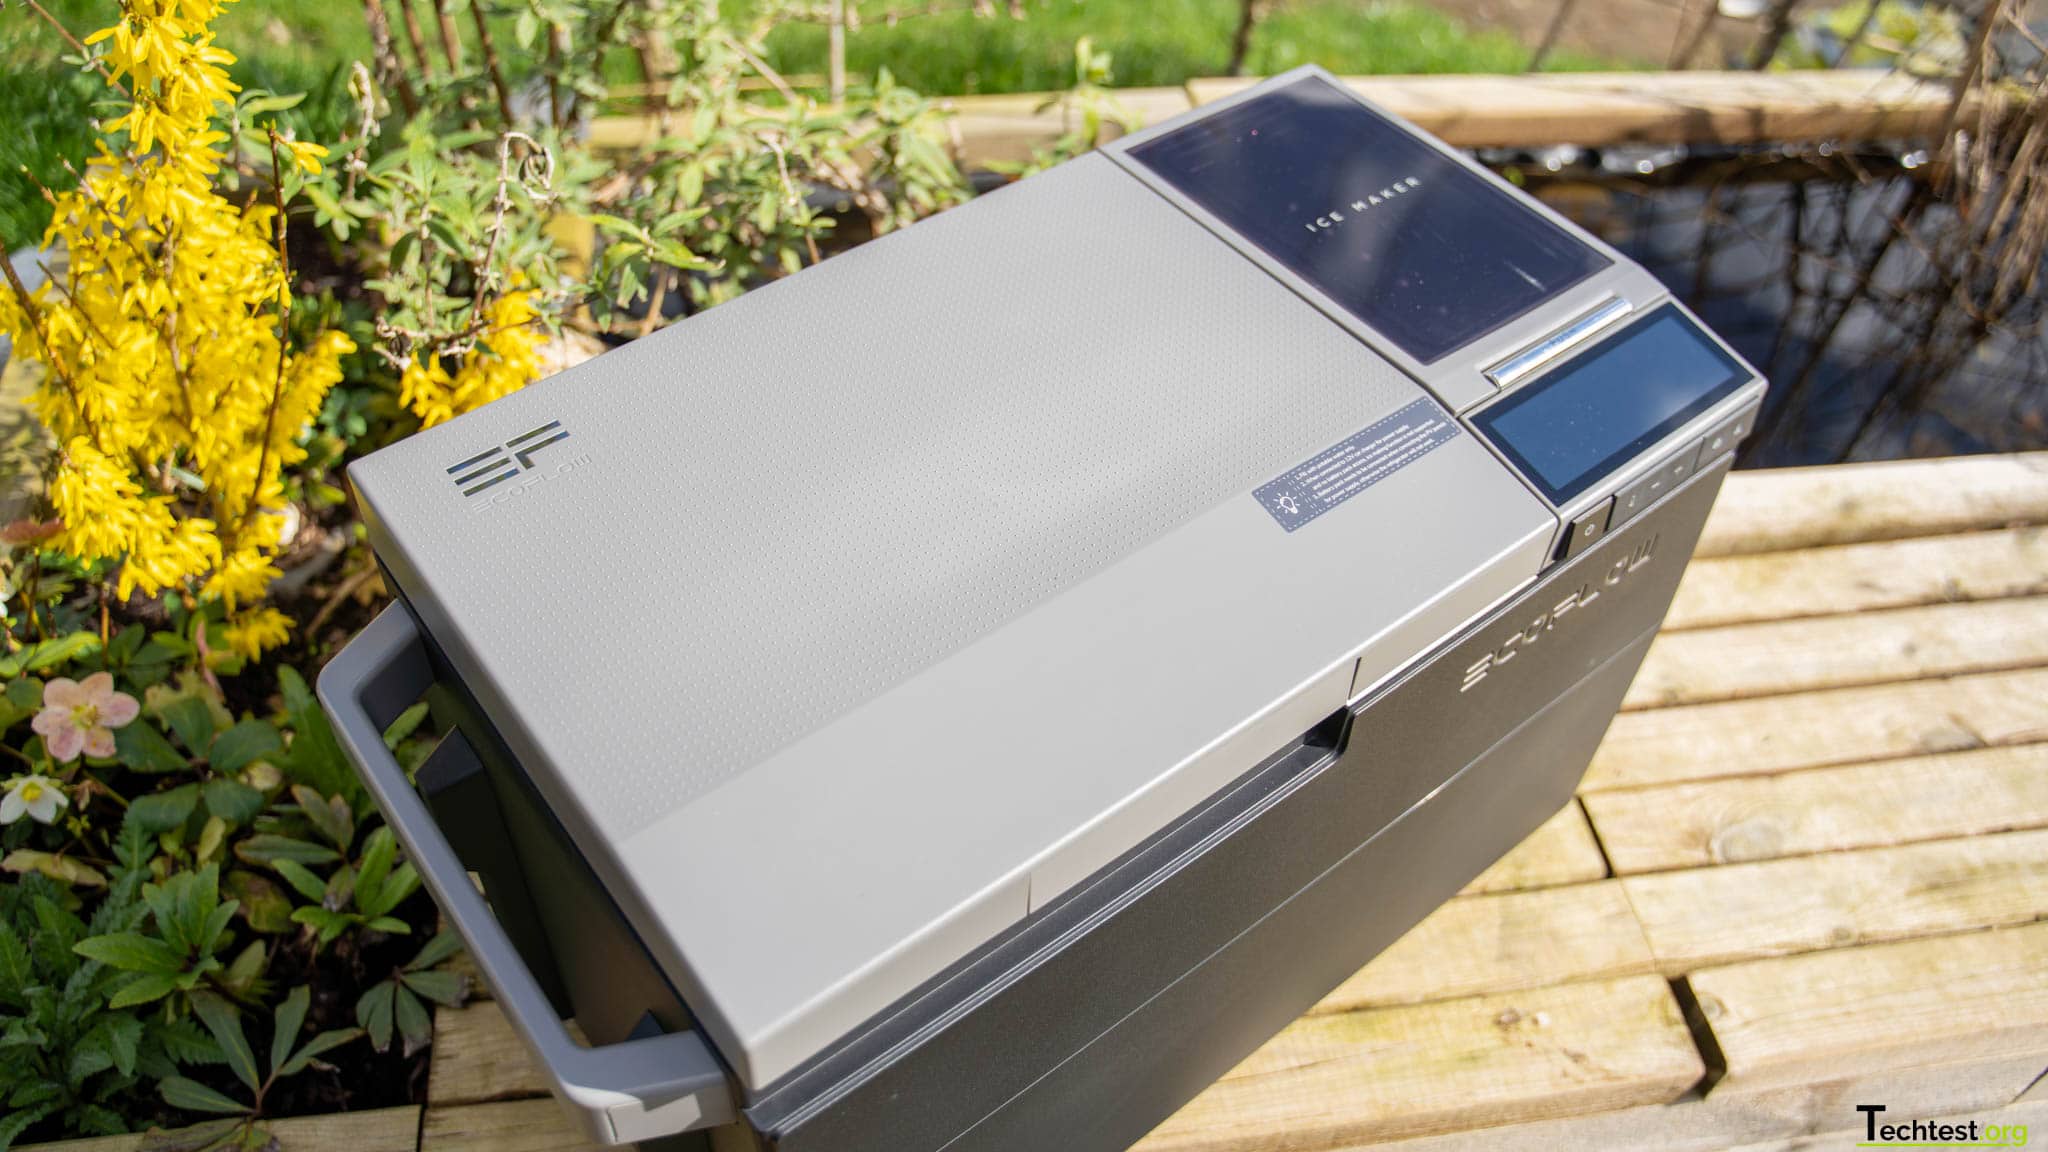 Kühlbox mit Solarpanel betreiben - ganz einfach mit der Ferropilot Solar  Powerbank 